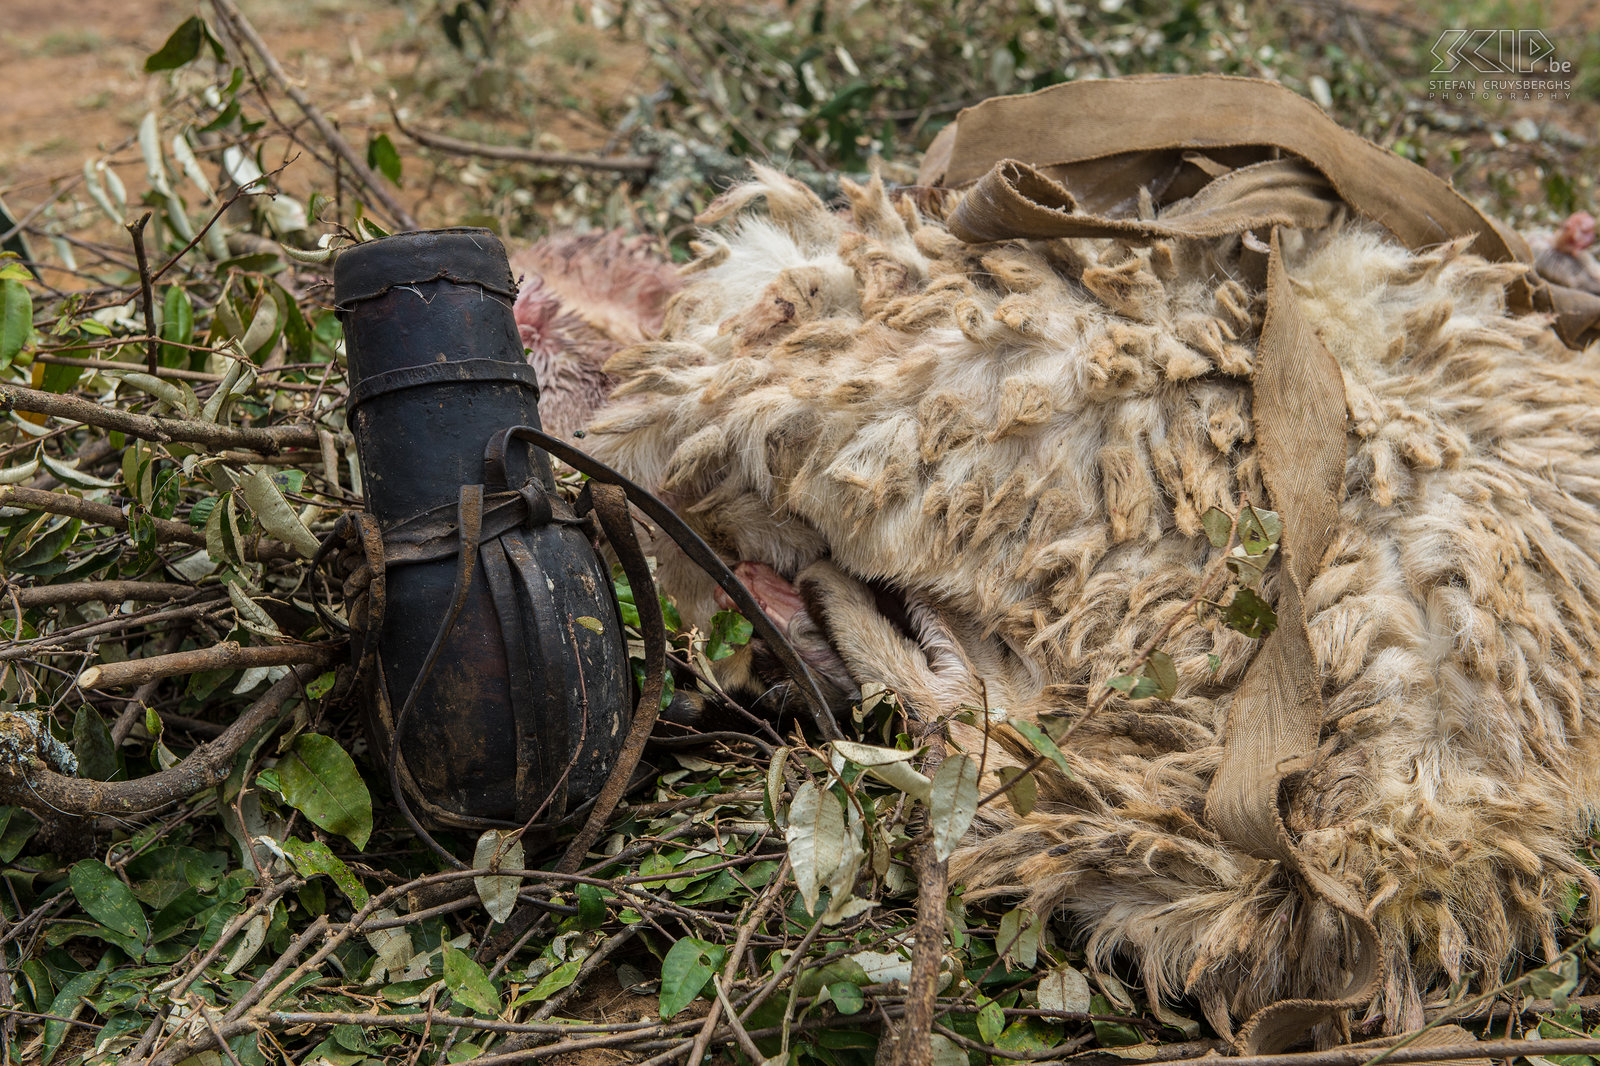 Kisima - Samburu lmuget - Bloed De lmuget ceremonies beginnen met het slachten van dieren. De moran moet een koe of geit doden, het bloed verzamelen en dit opdrinken. Stefan Cruysberghs